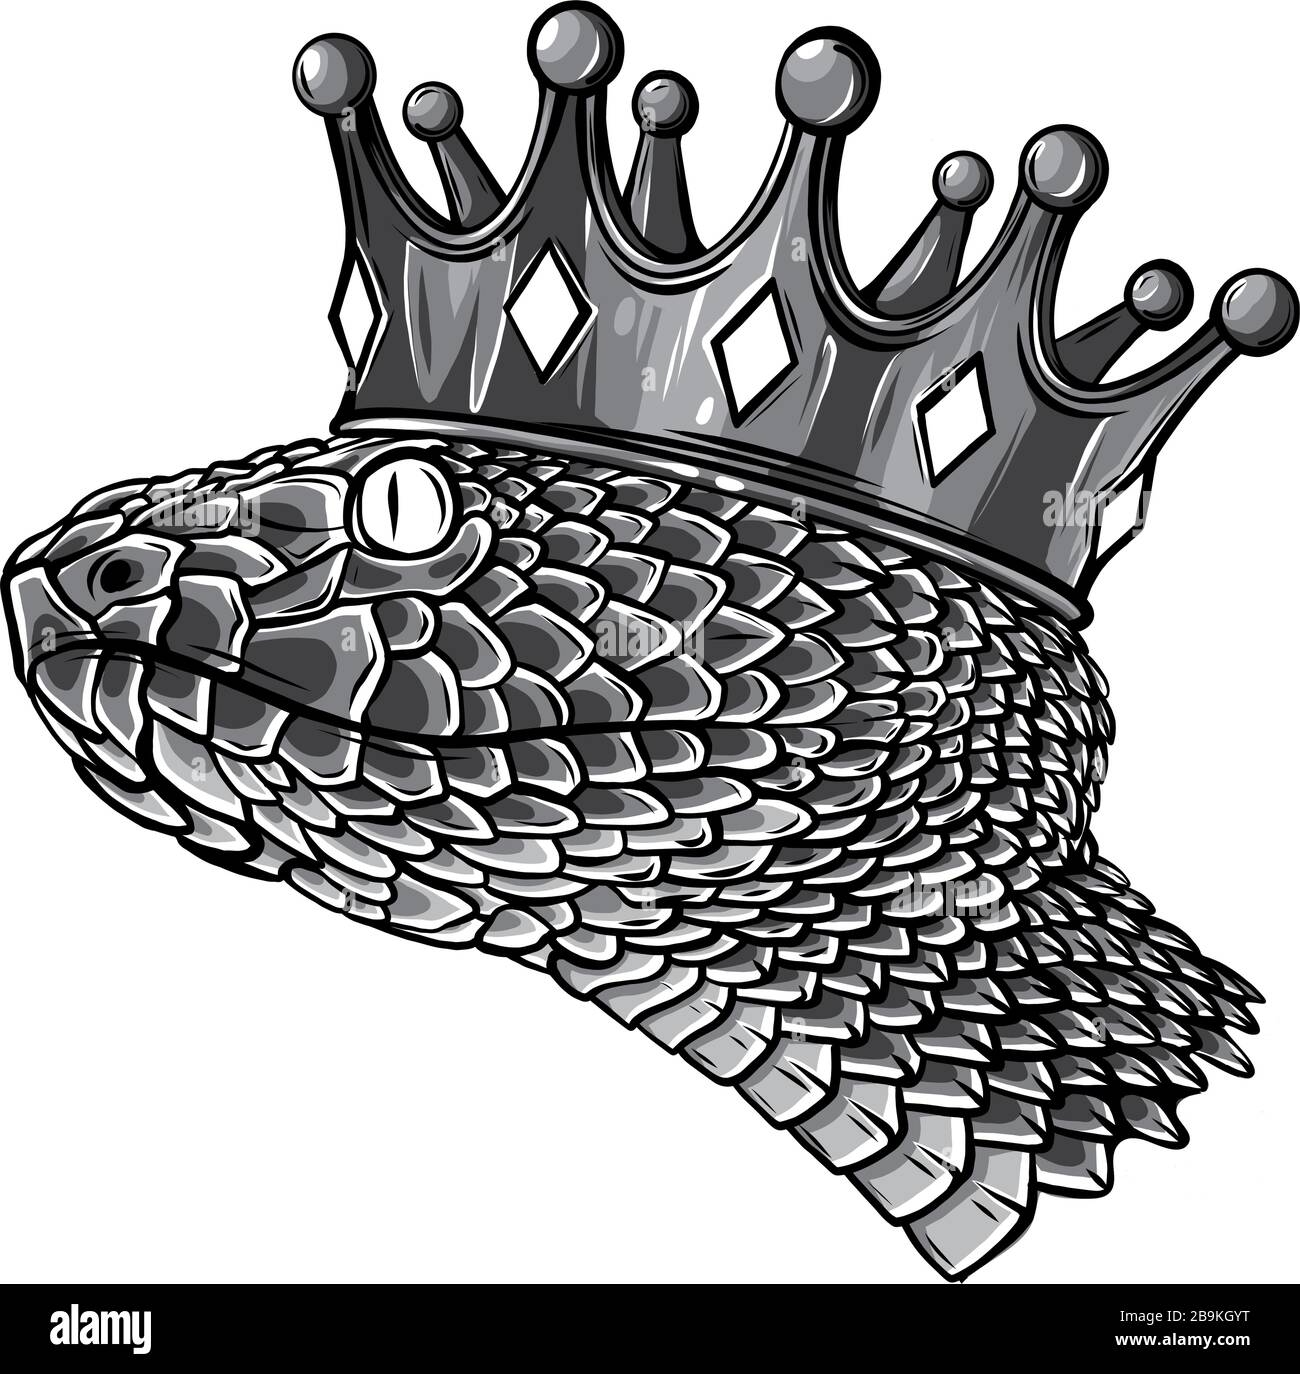 Modèle de logo Snake Crown illustration vectorielle isolée Illustration de Vecteur